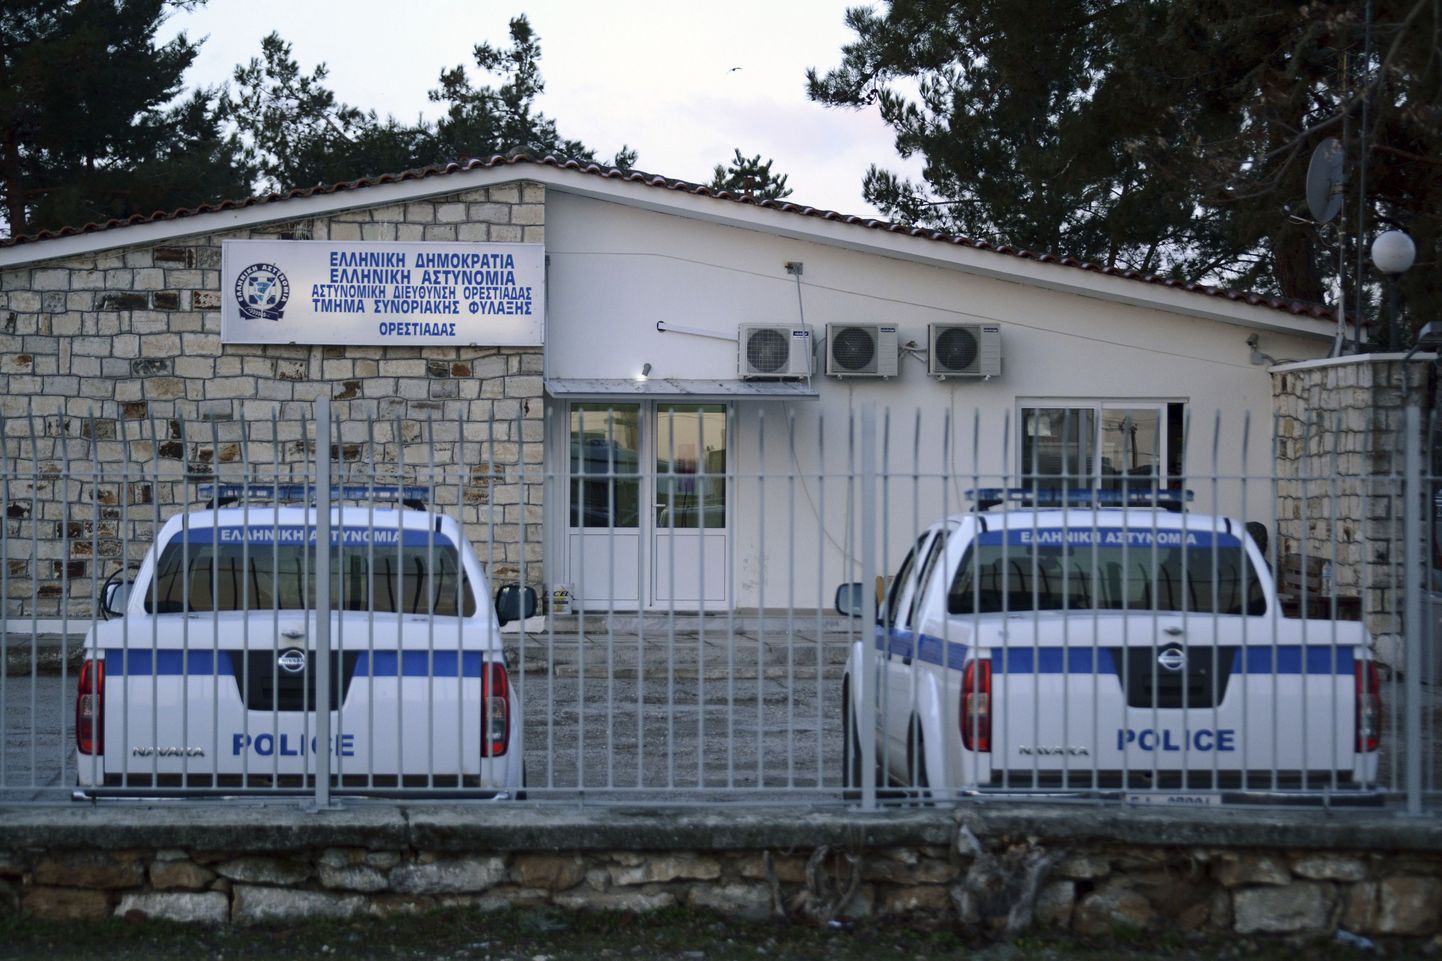 Kreeka politseijaoskond Türgi piiri lähedal asuvas külas.